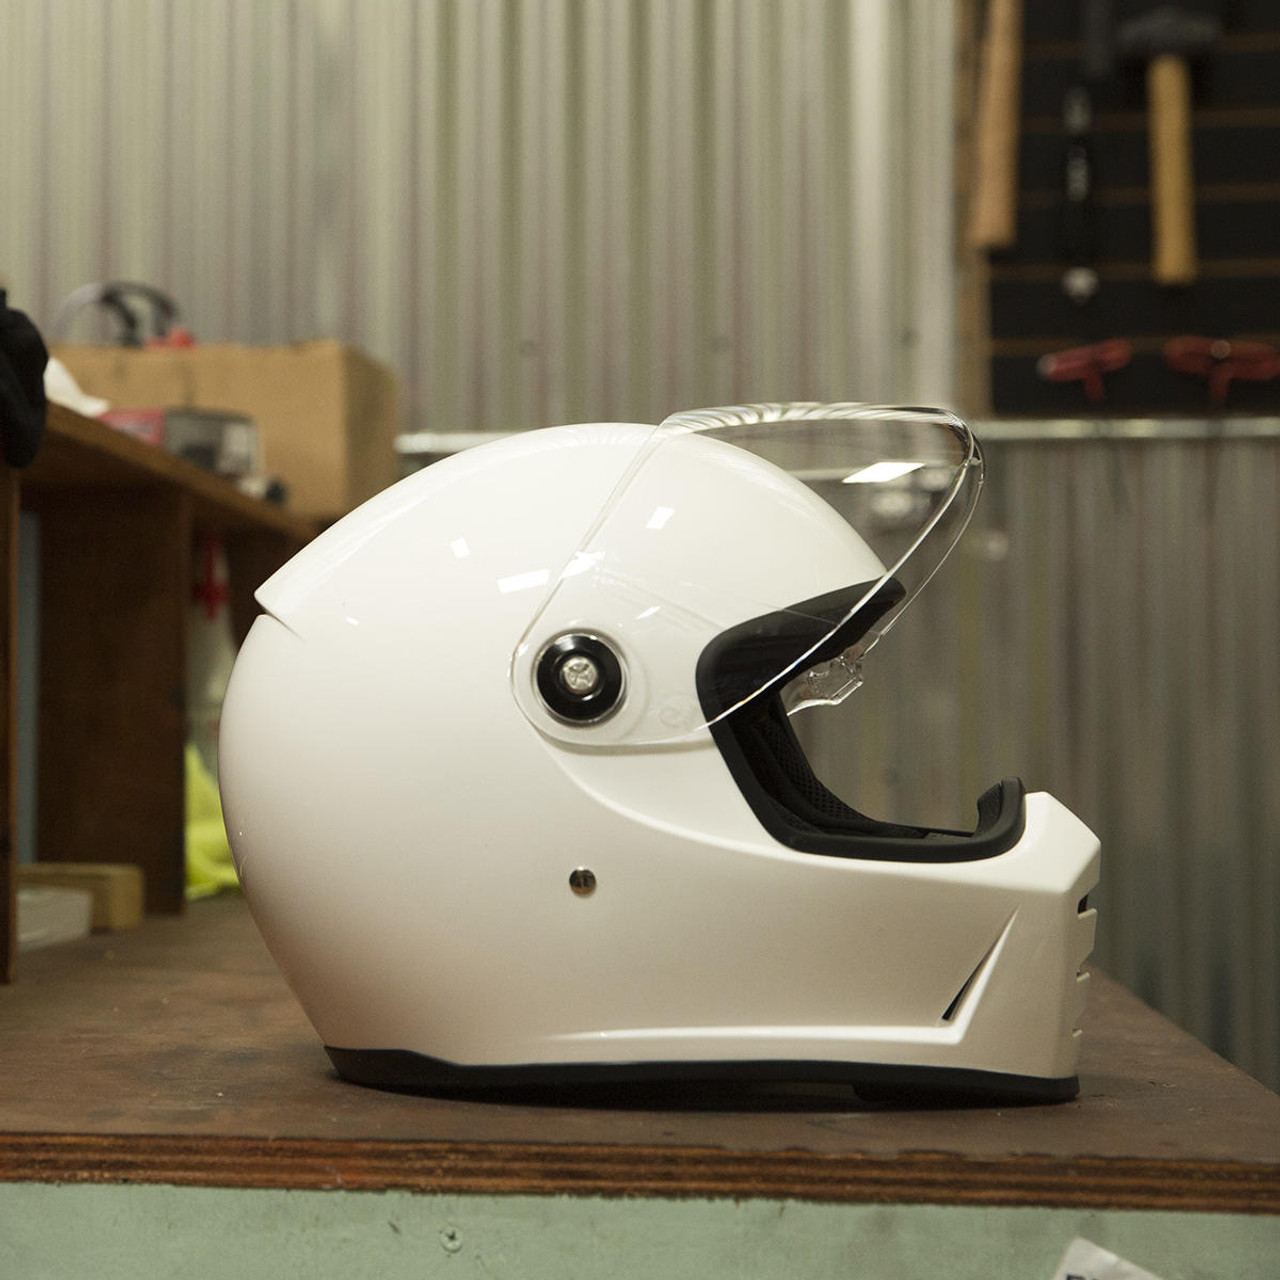 Small 01019940 Biltwell Lane Splitter Solid Full-face Motorcycle Helmet Gloss White 